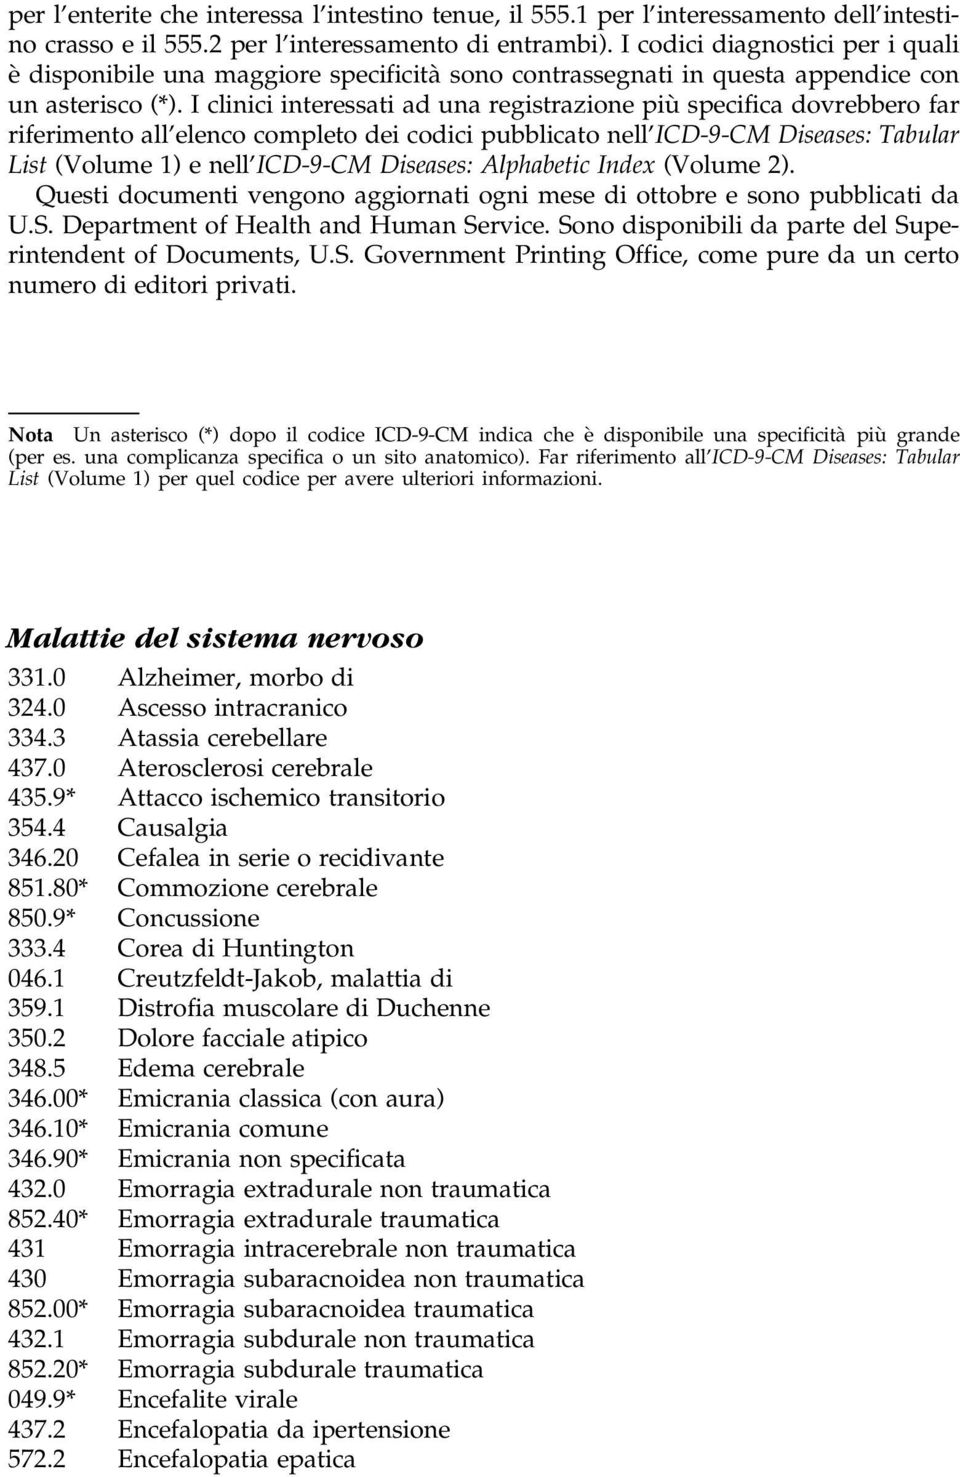 I clinici interessati ad una registrazione piuá specifica dovrebbero far riferimento all'elenco completo dei codici pubblicato nell'icd-9-cm Diseases: Tabular List (Volume 1)e nell'icd-9-cm Diseases: